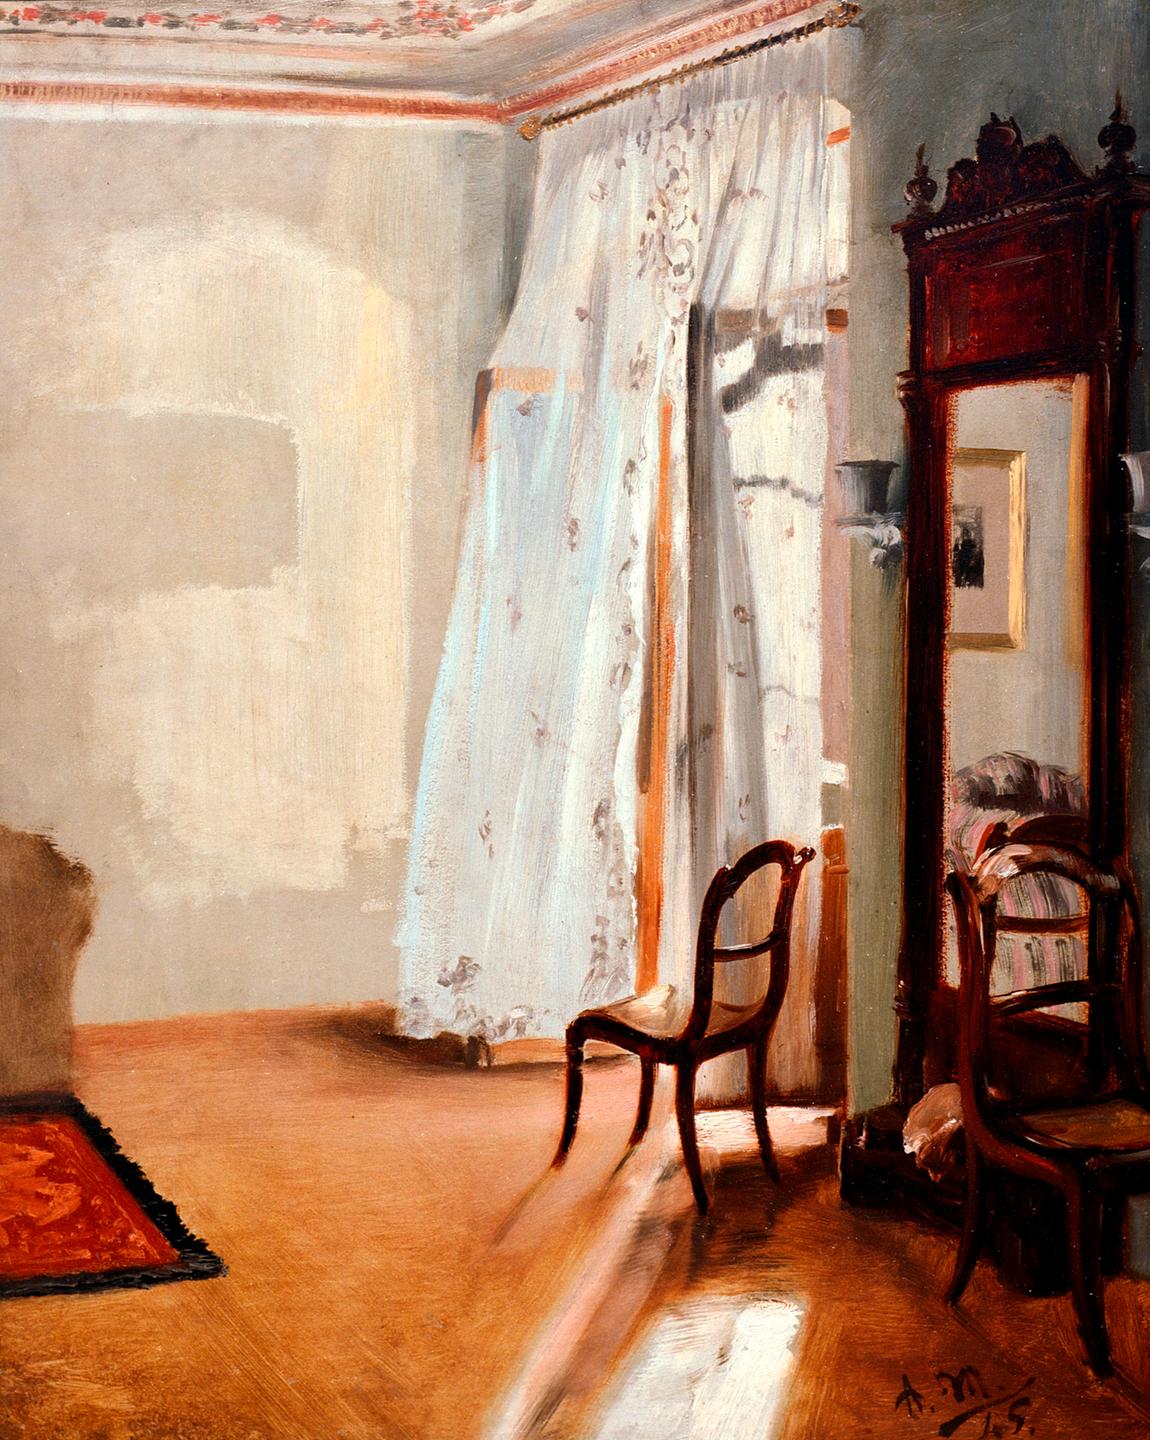 Das Gemälde von Adolph Menzel zeigt einem Stuhl am geöffneten Fenster, durch dessen Vorhänge das Licht herein fällt.